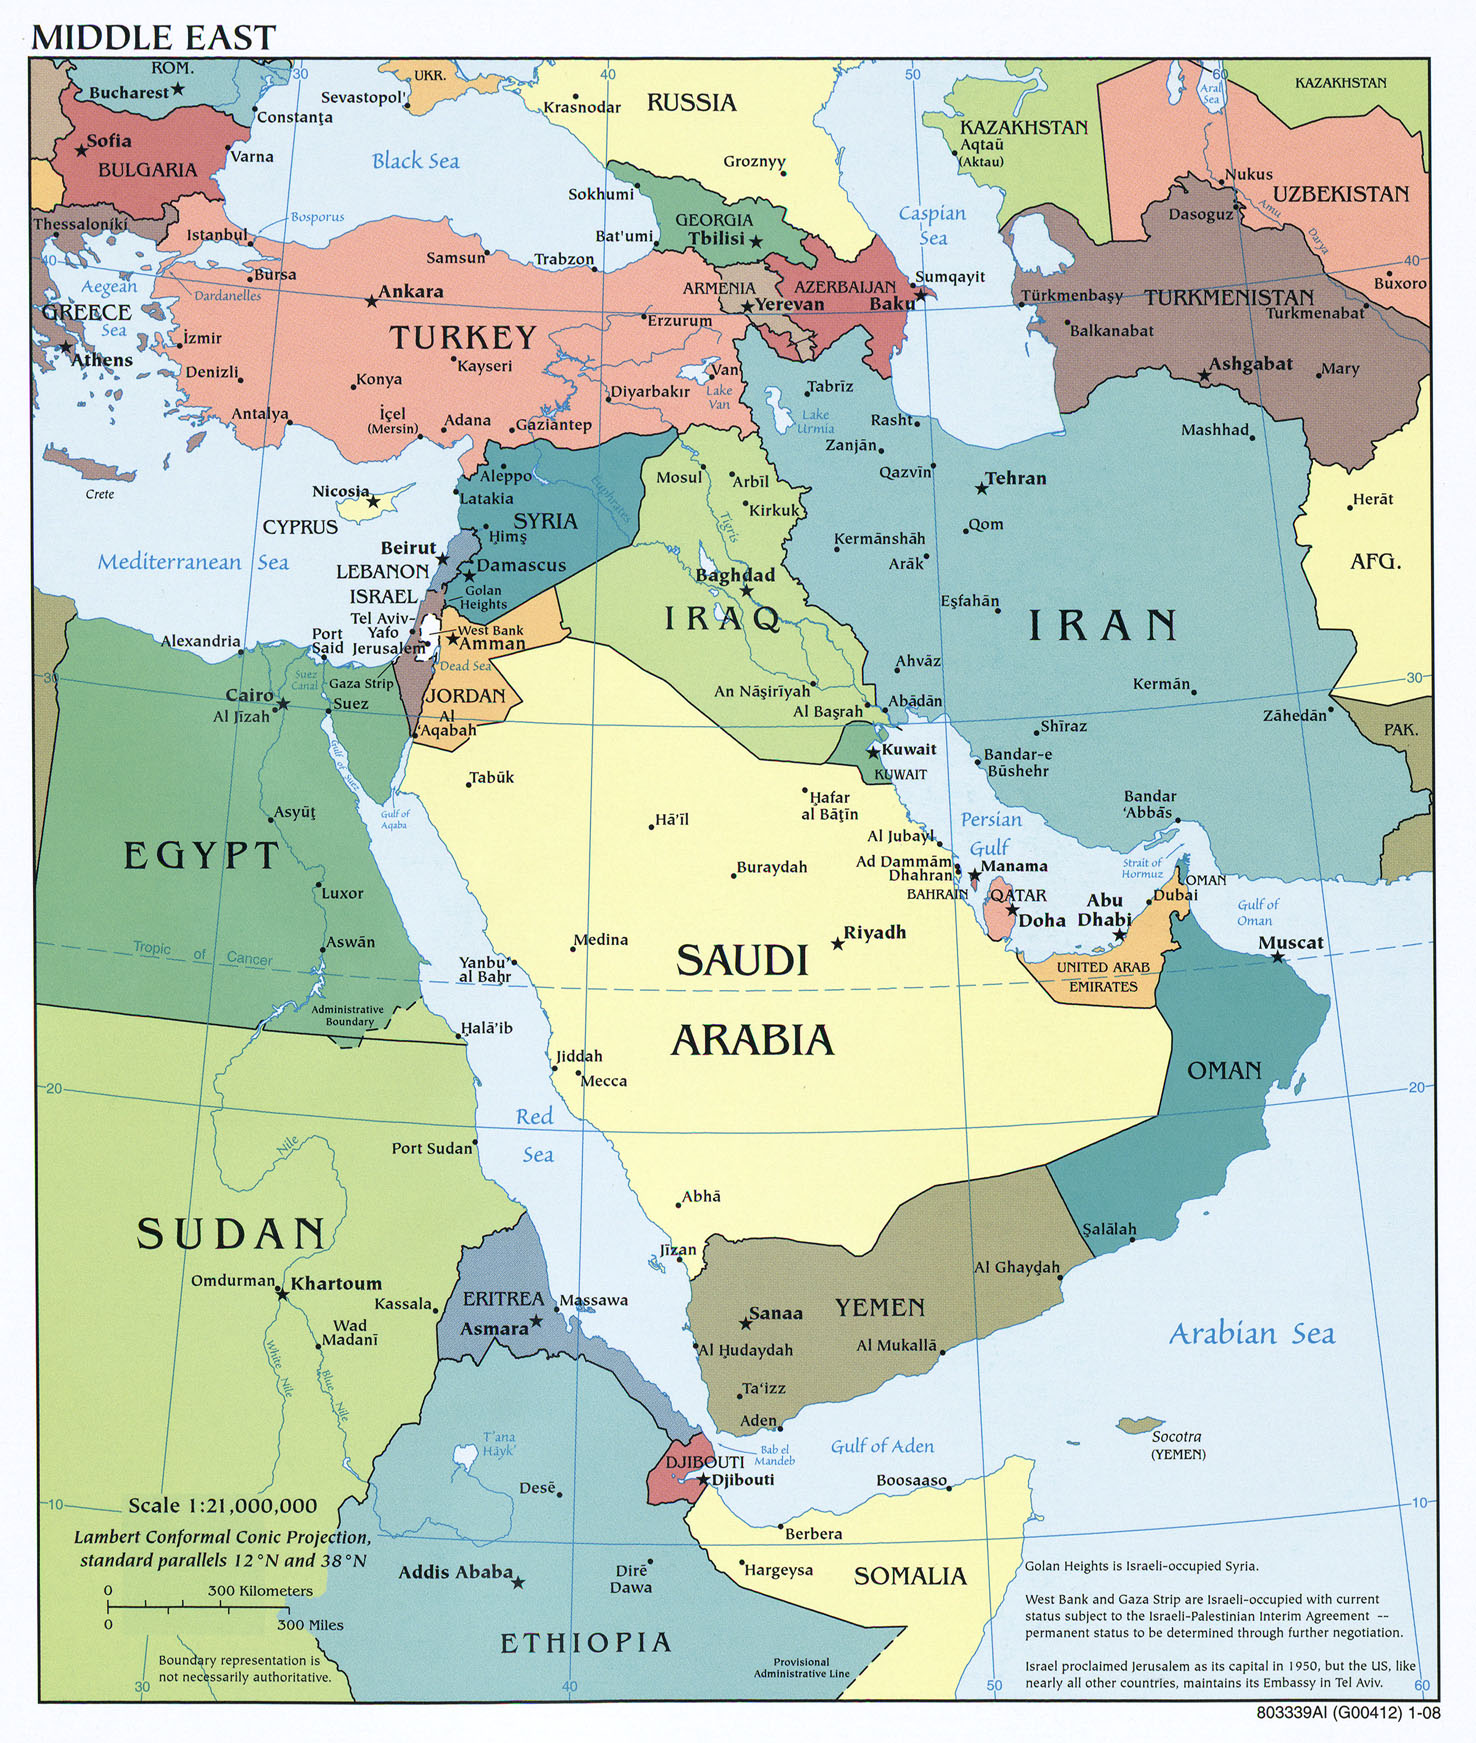 Guerra entre Arabia Saudita y Yemen - Página 6 Mapa_de_Oriente_Medio